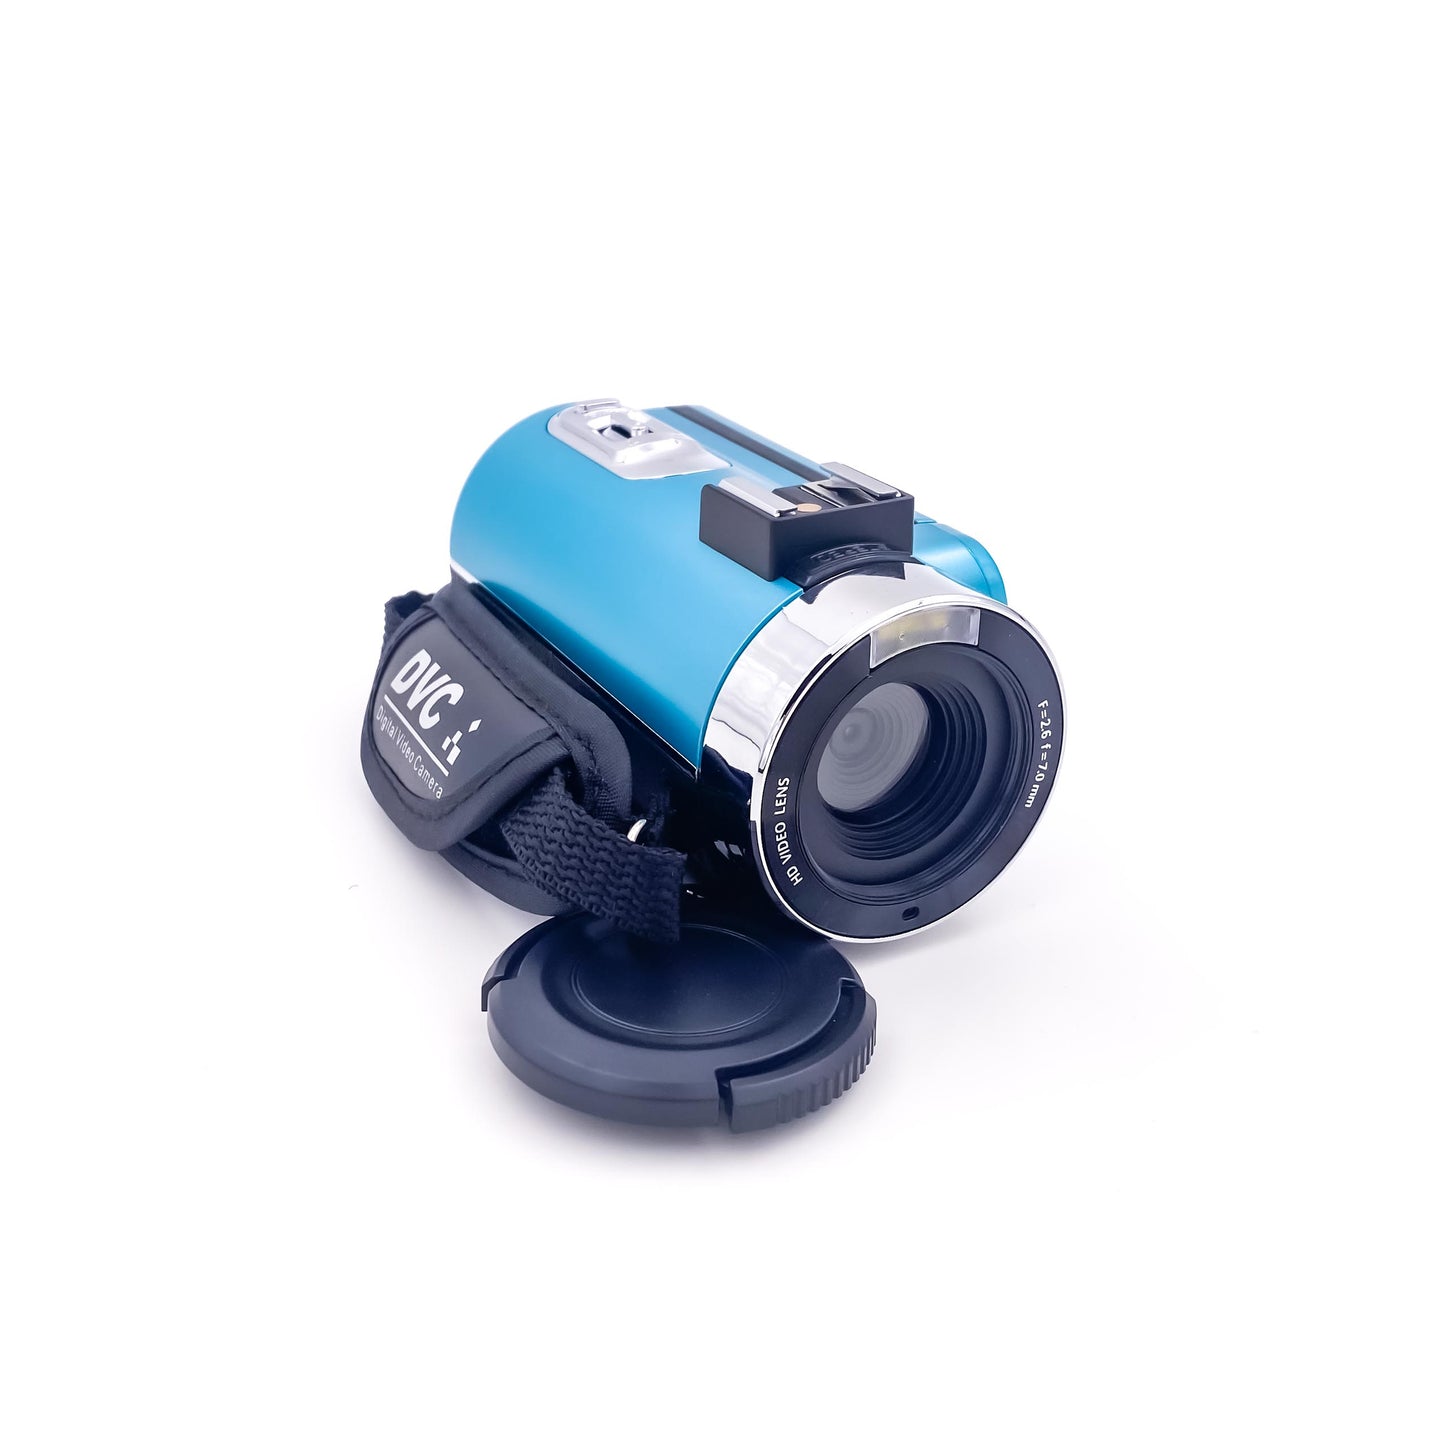 4k-digital-camcorder-id995hd-v1-teal-1